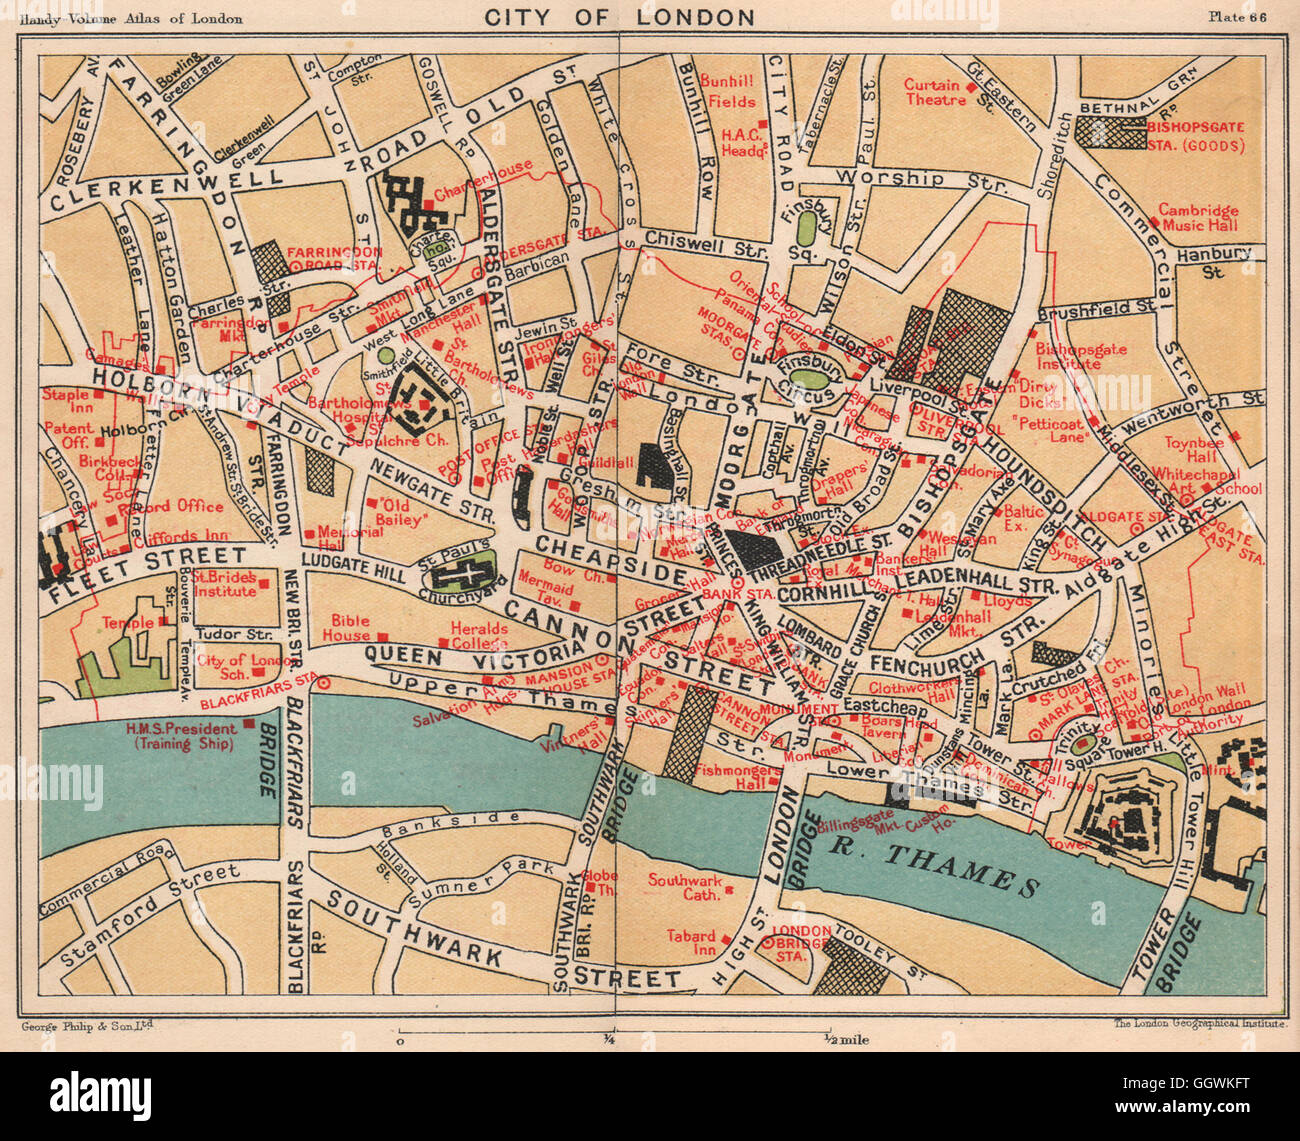 CITY OF LONDON. Öffentlichen Gebäuden Livery Companies Austausch Botschaften, 1932 Karte Stockfoto